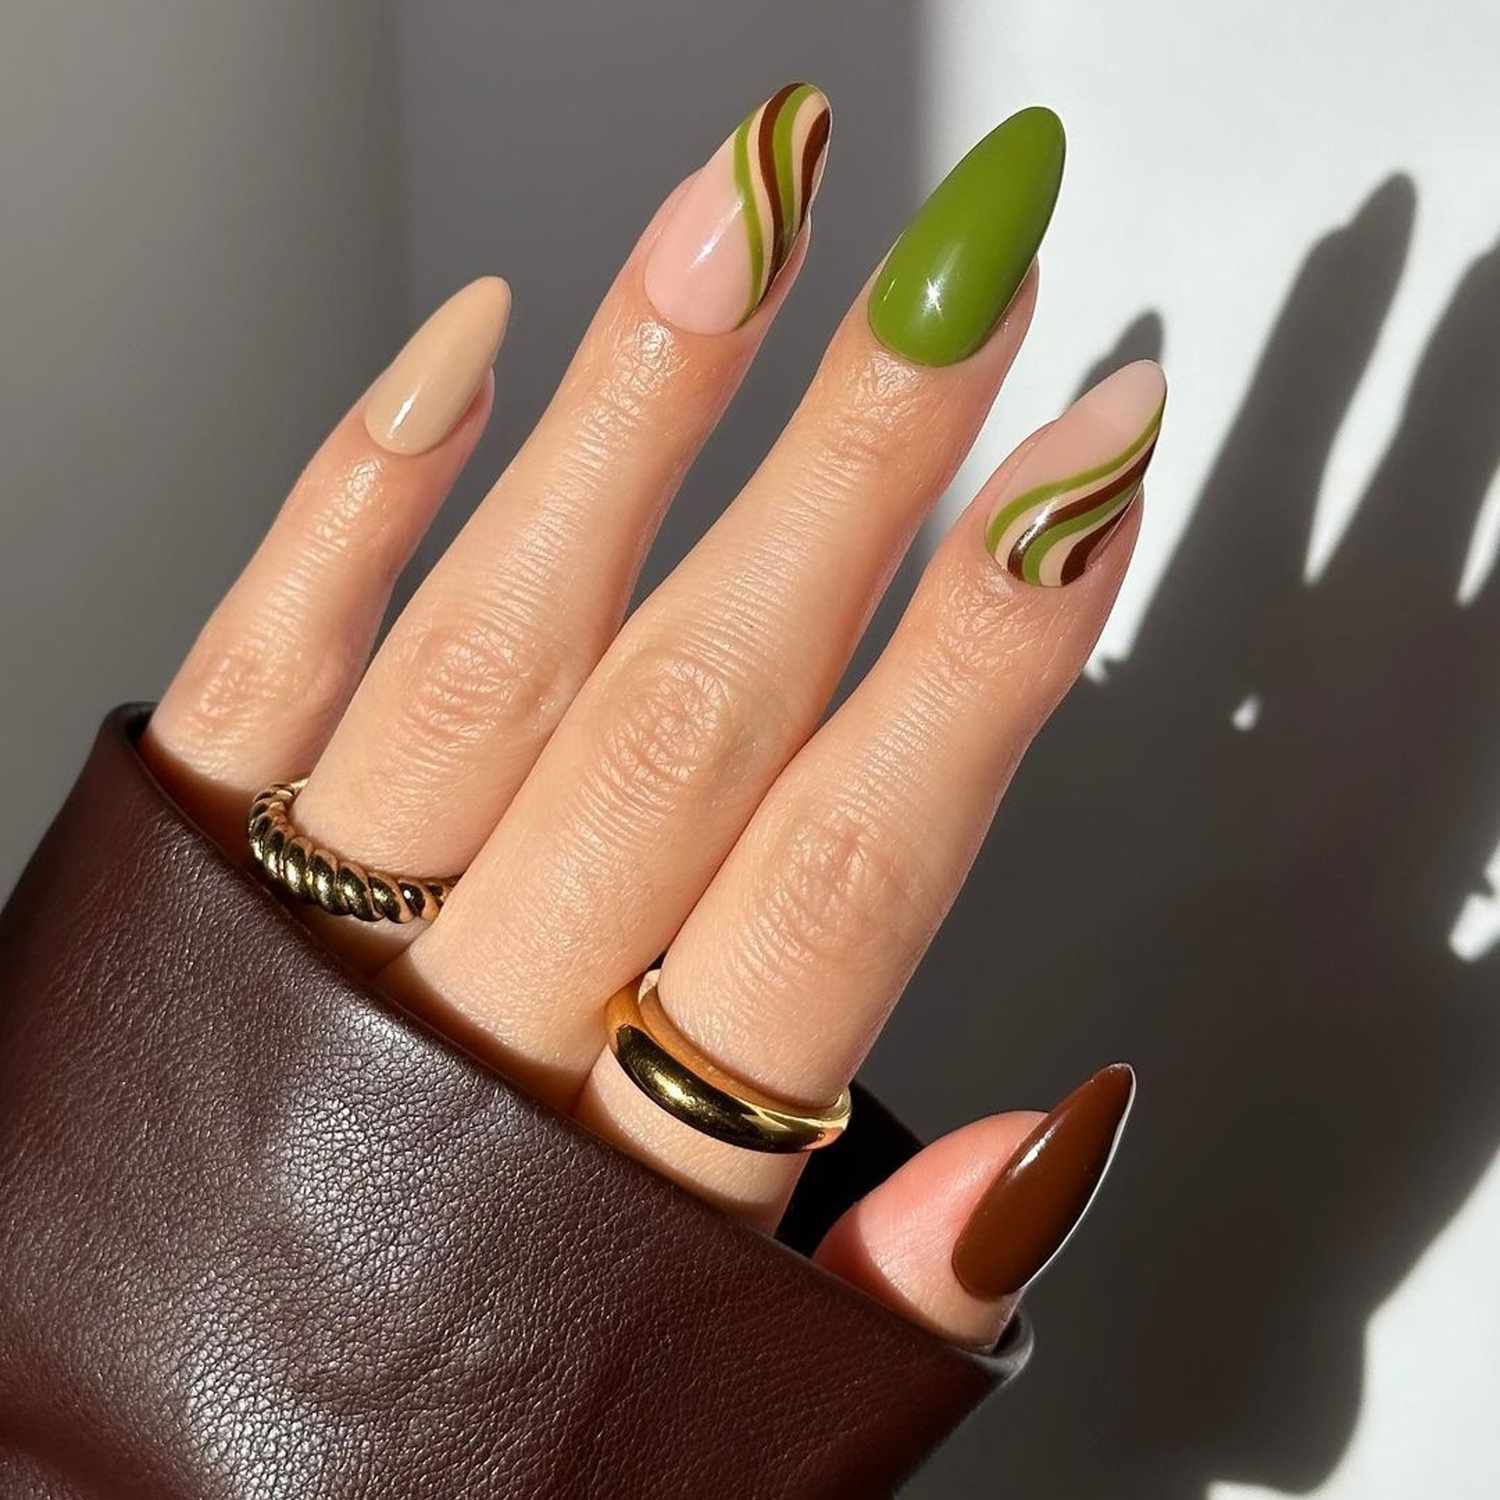 Manicure marrom e verde fosca com unhas sólidas alternadas e design espiralado